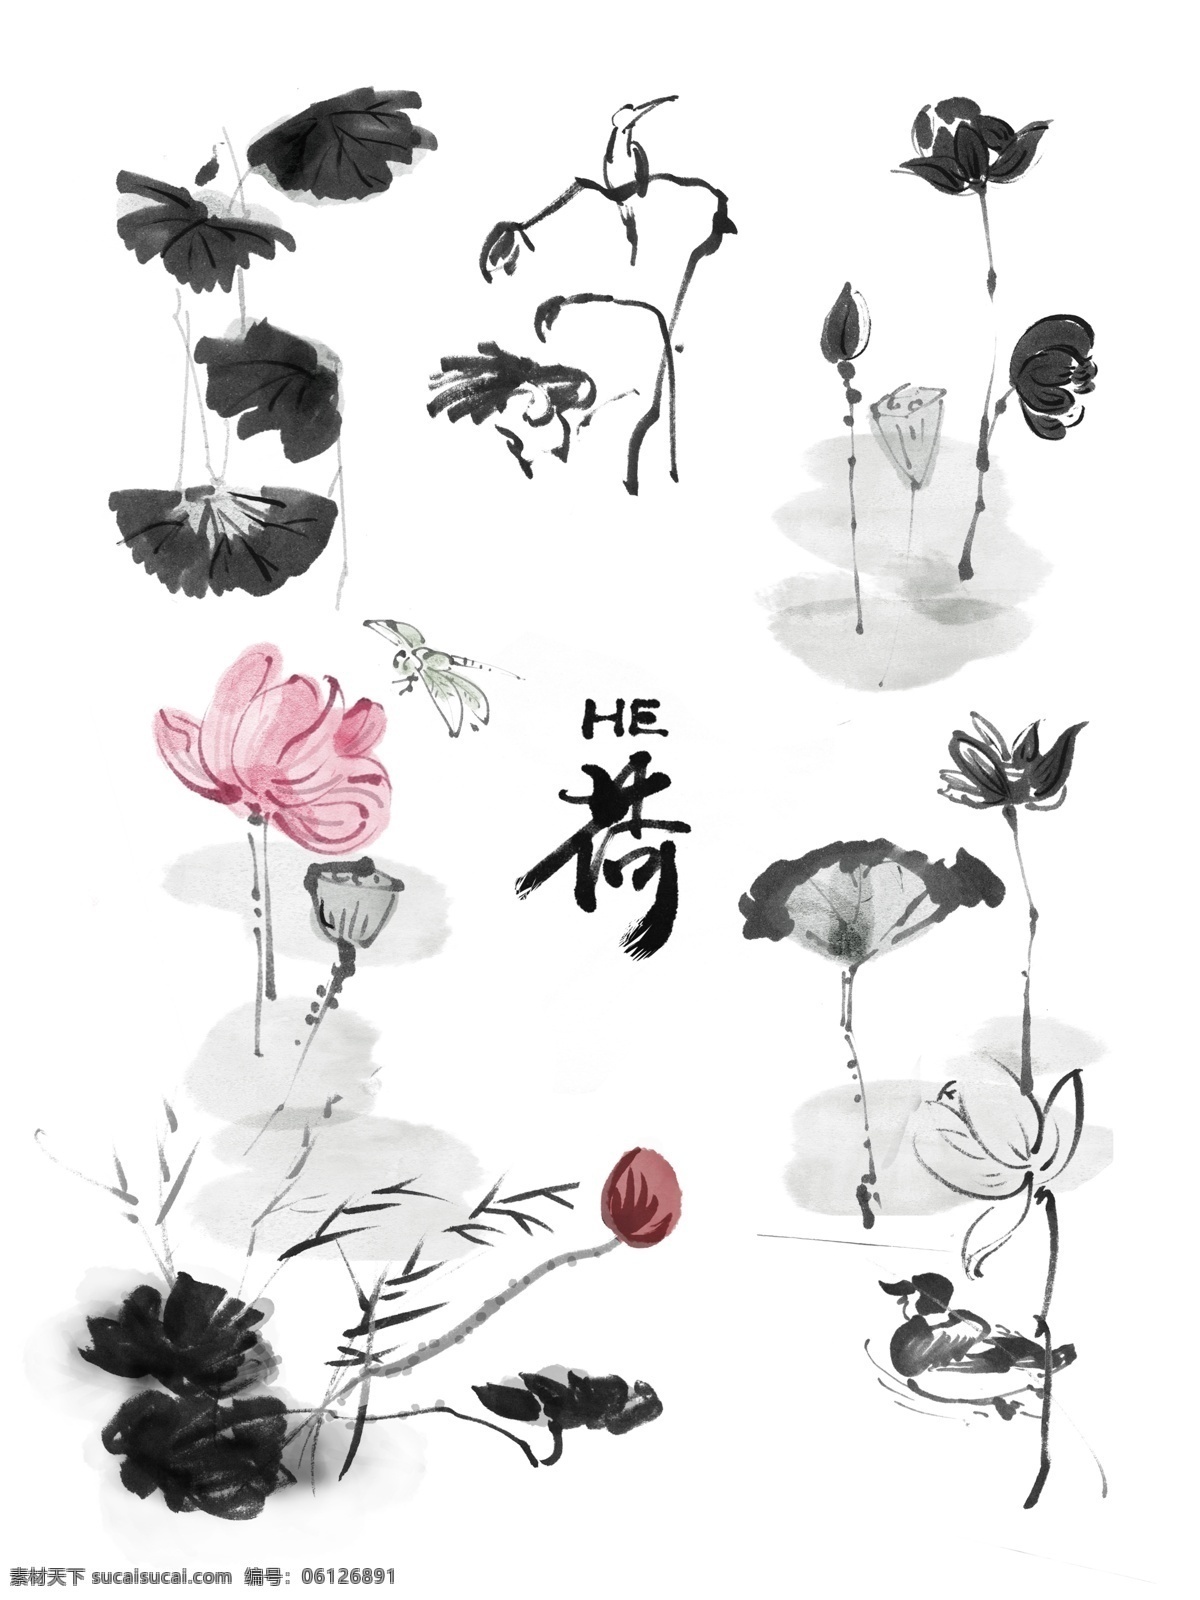 中国画 写意 荷花 荷叶 水墨 套 图 传统 古风 中国风 古代 绘画 东方 墨 花卉 植物 夏天 商业 原创 套图